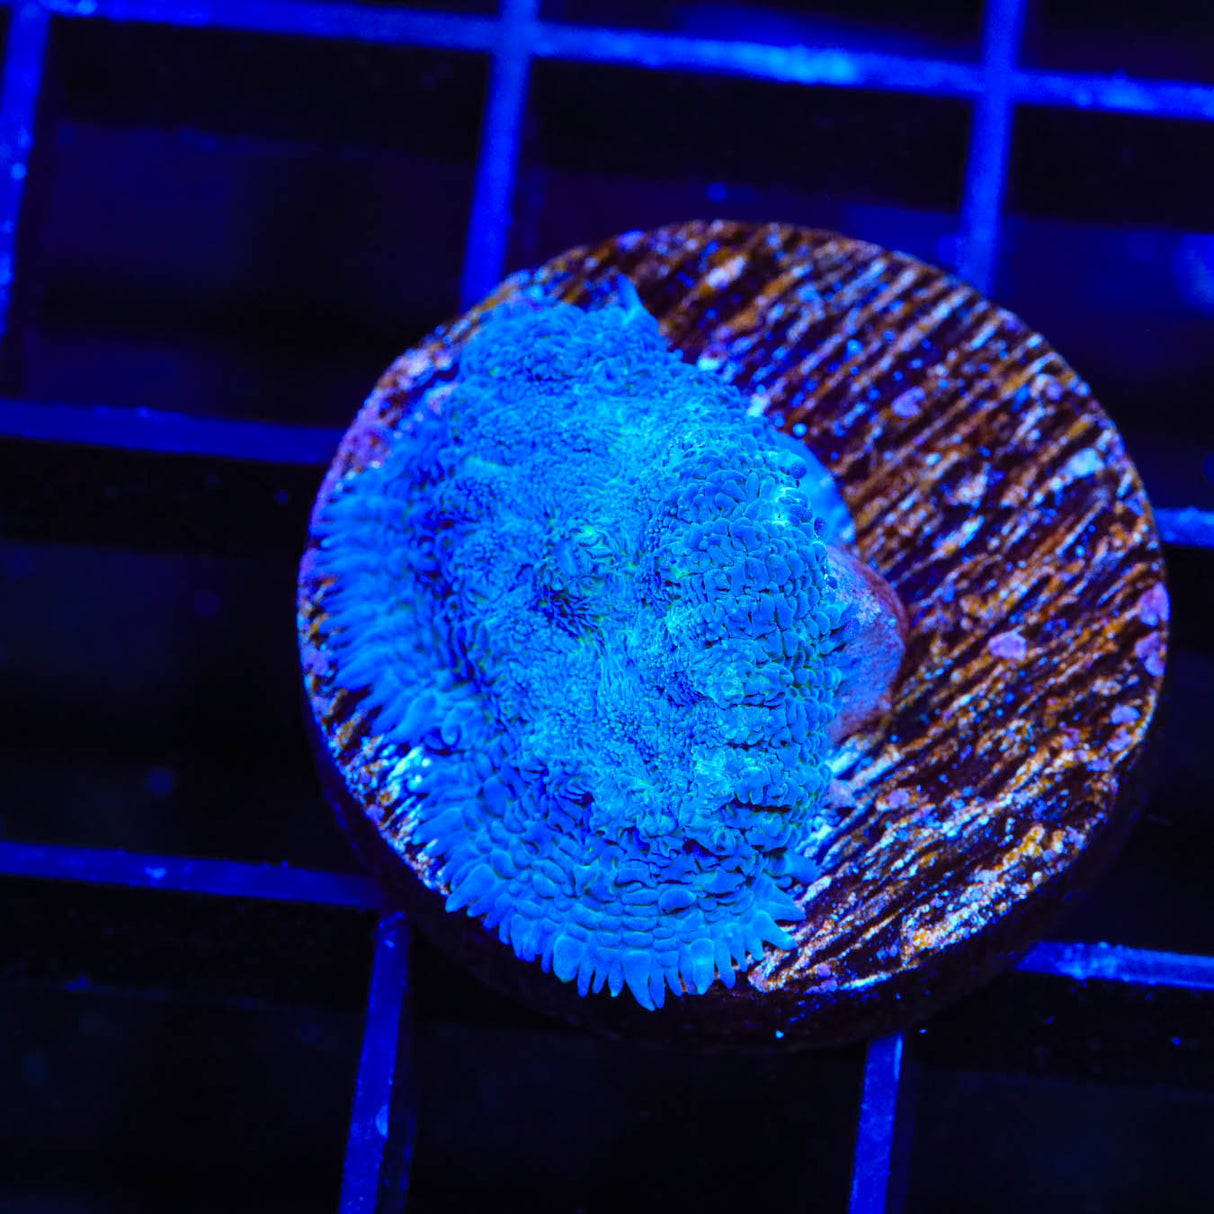 Blue Rhodactis Mushroom Coral